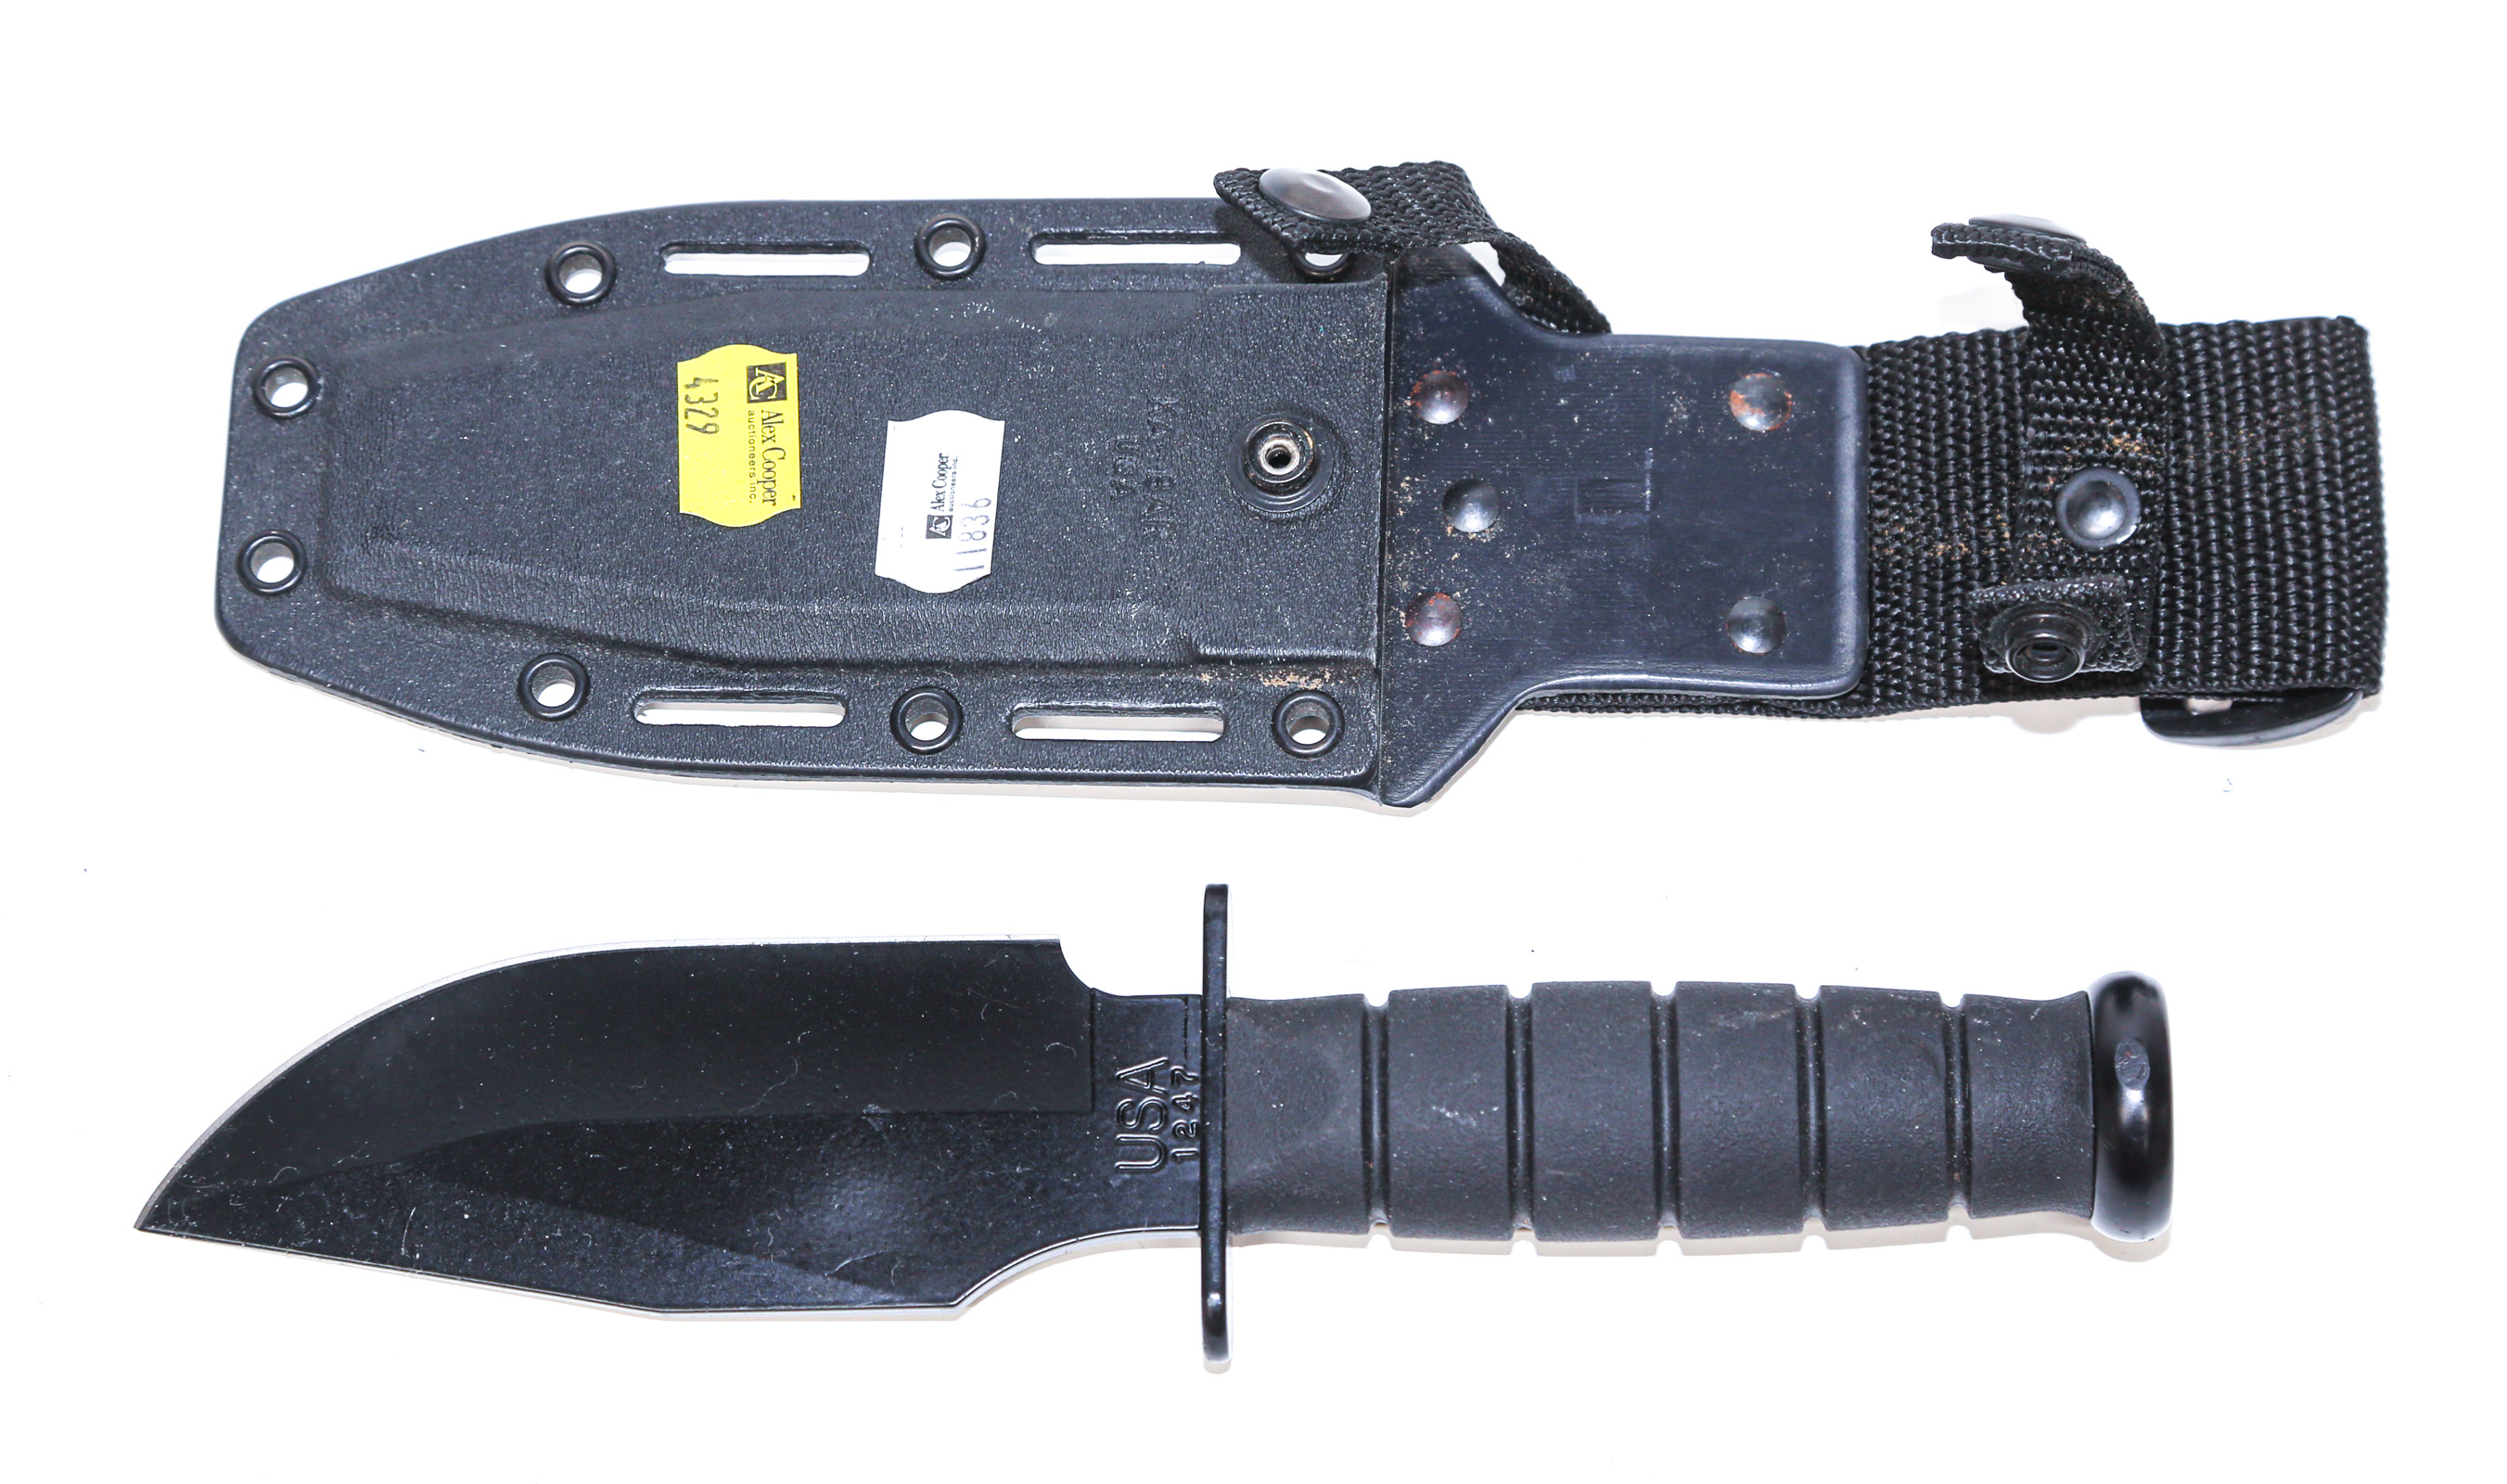 KA-BAR 1247 FIXED BLADE KNIFE With